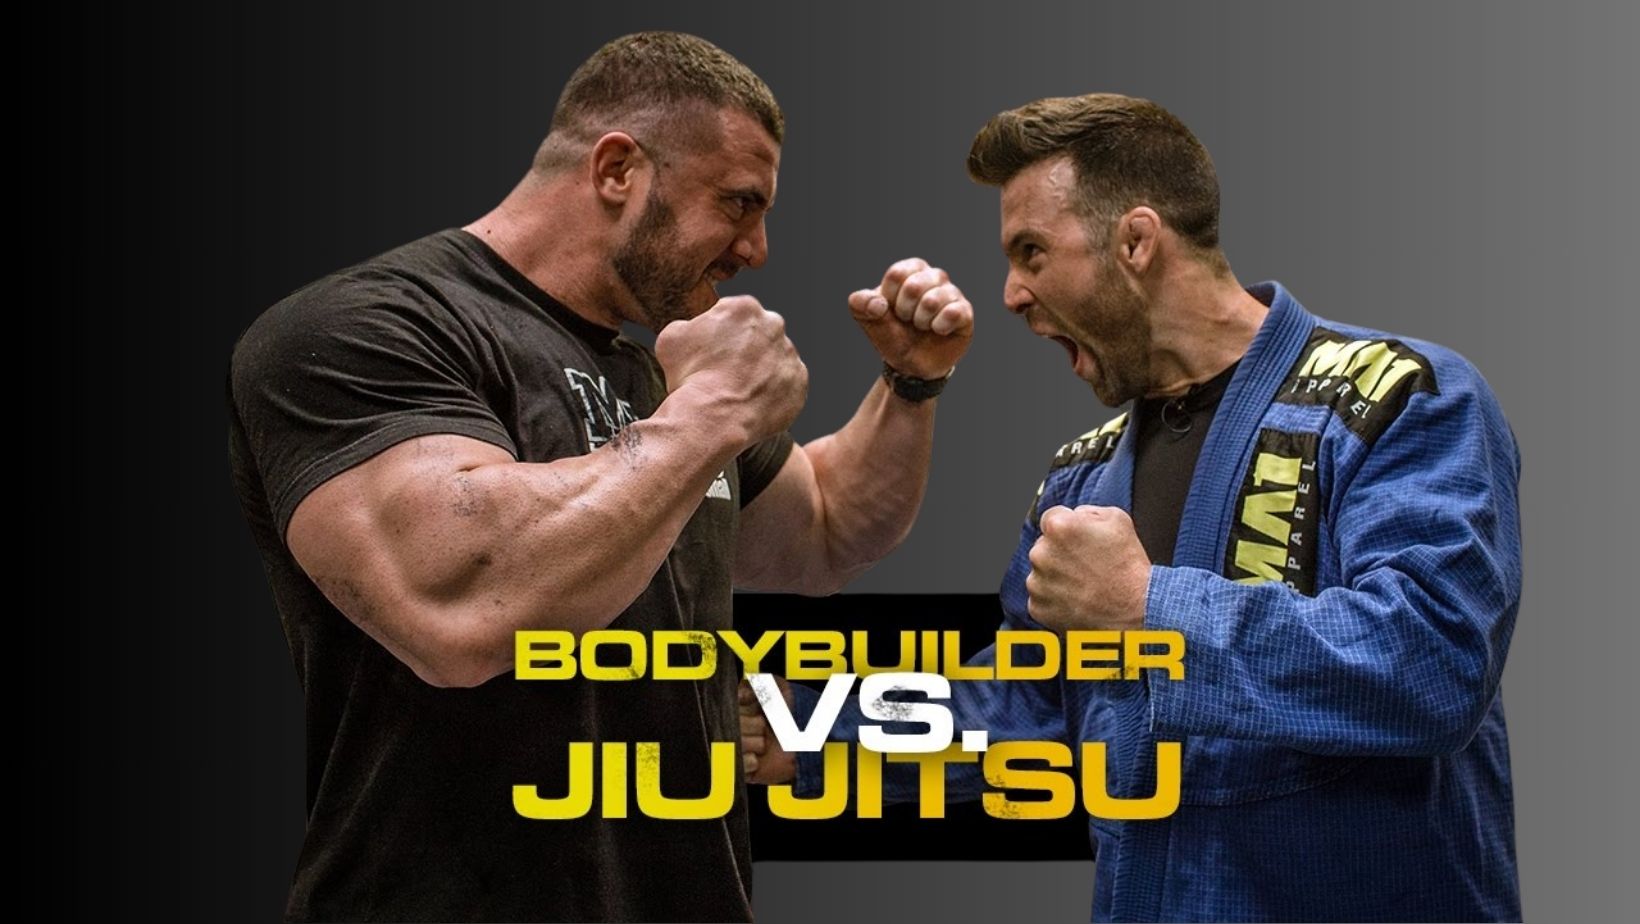 Brazilian jiu jitsu vs Bodybuilding